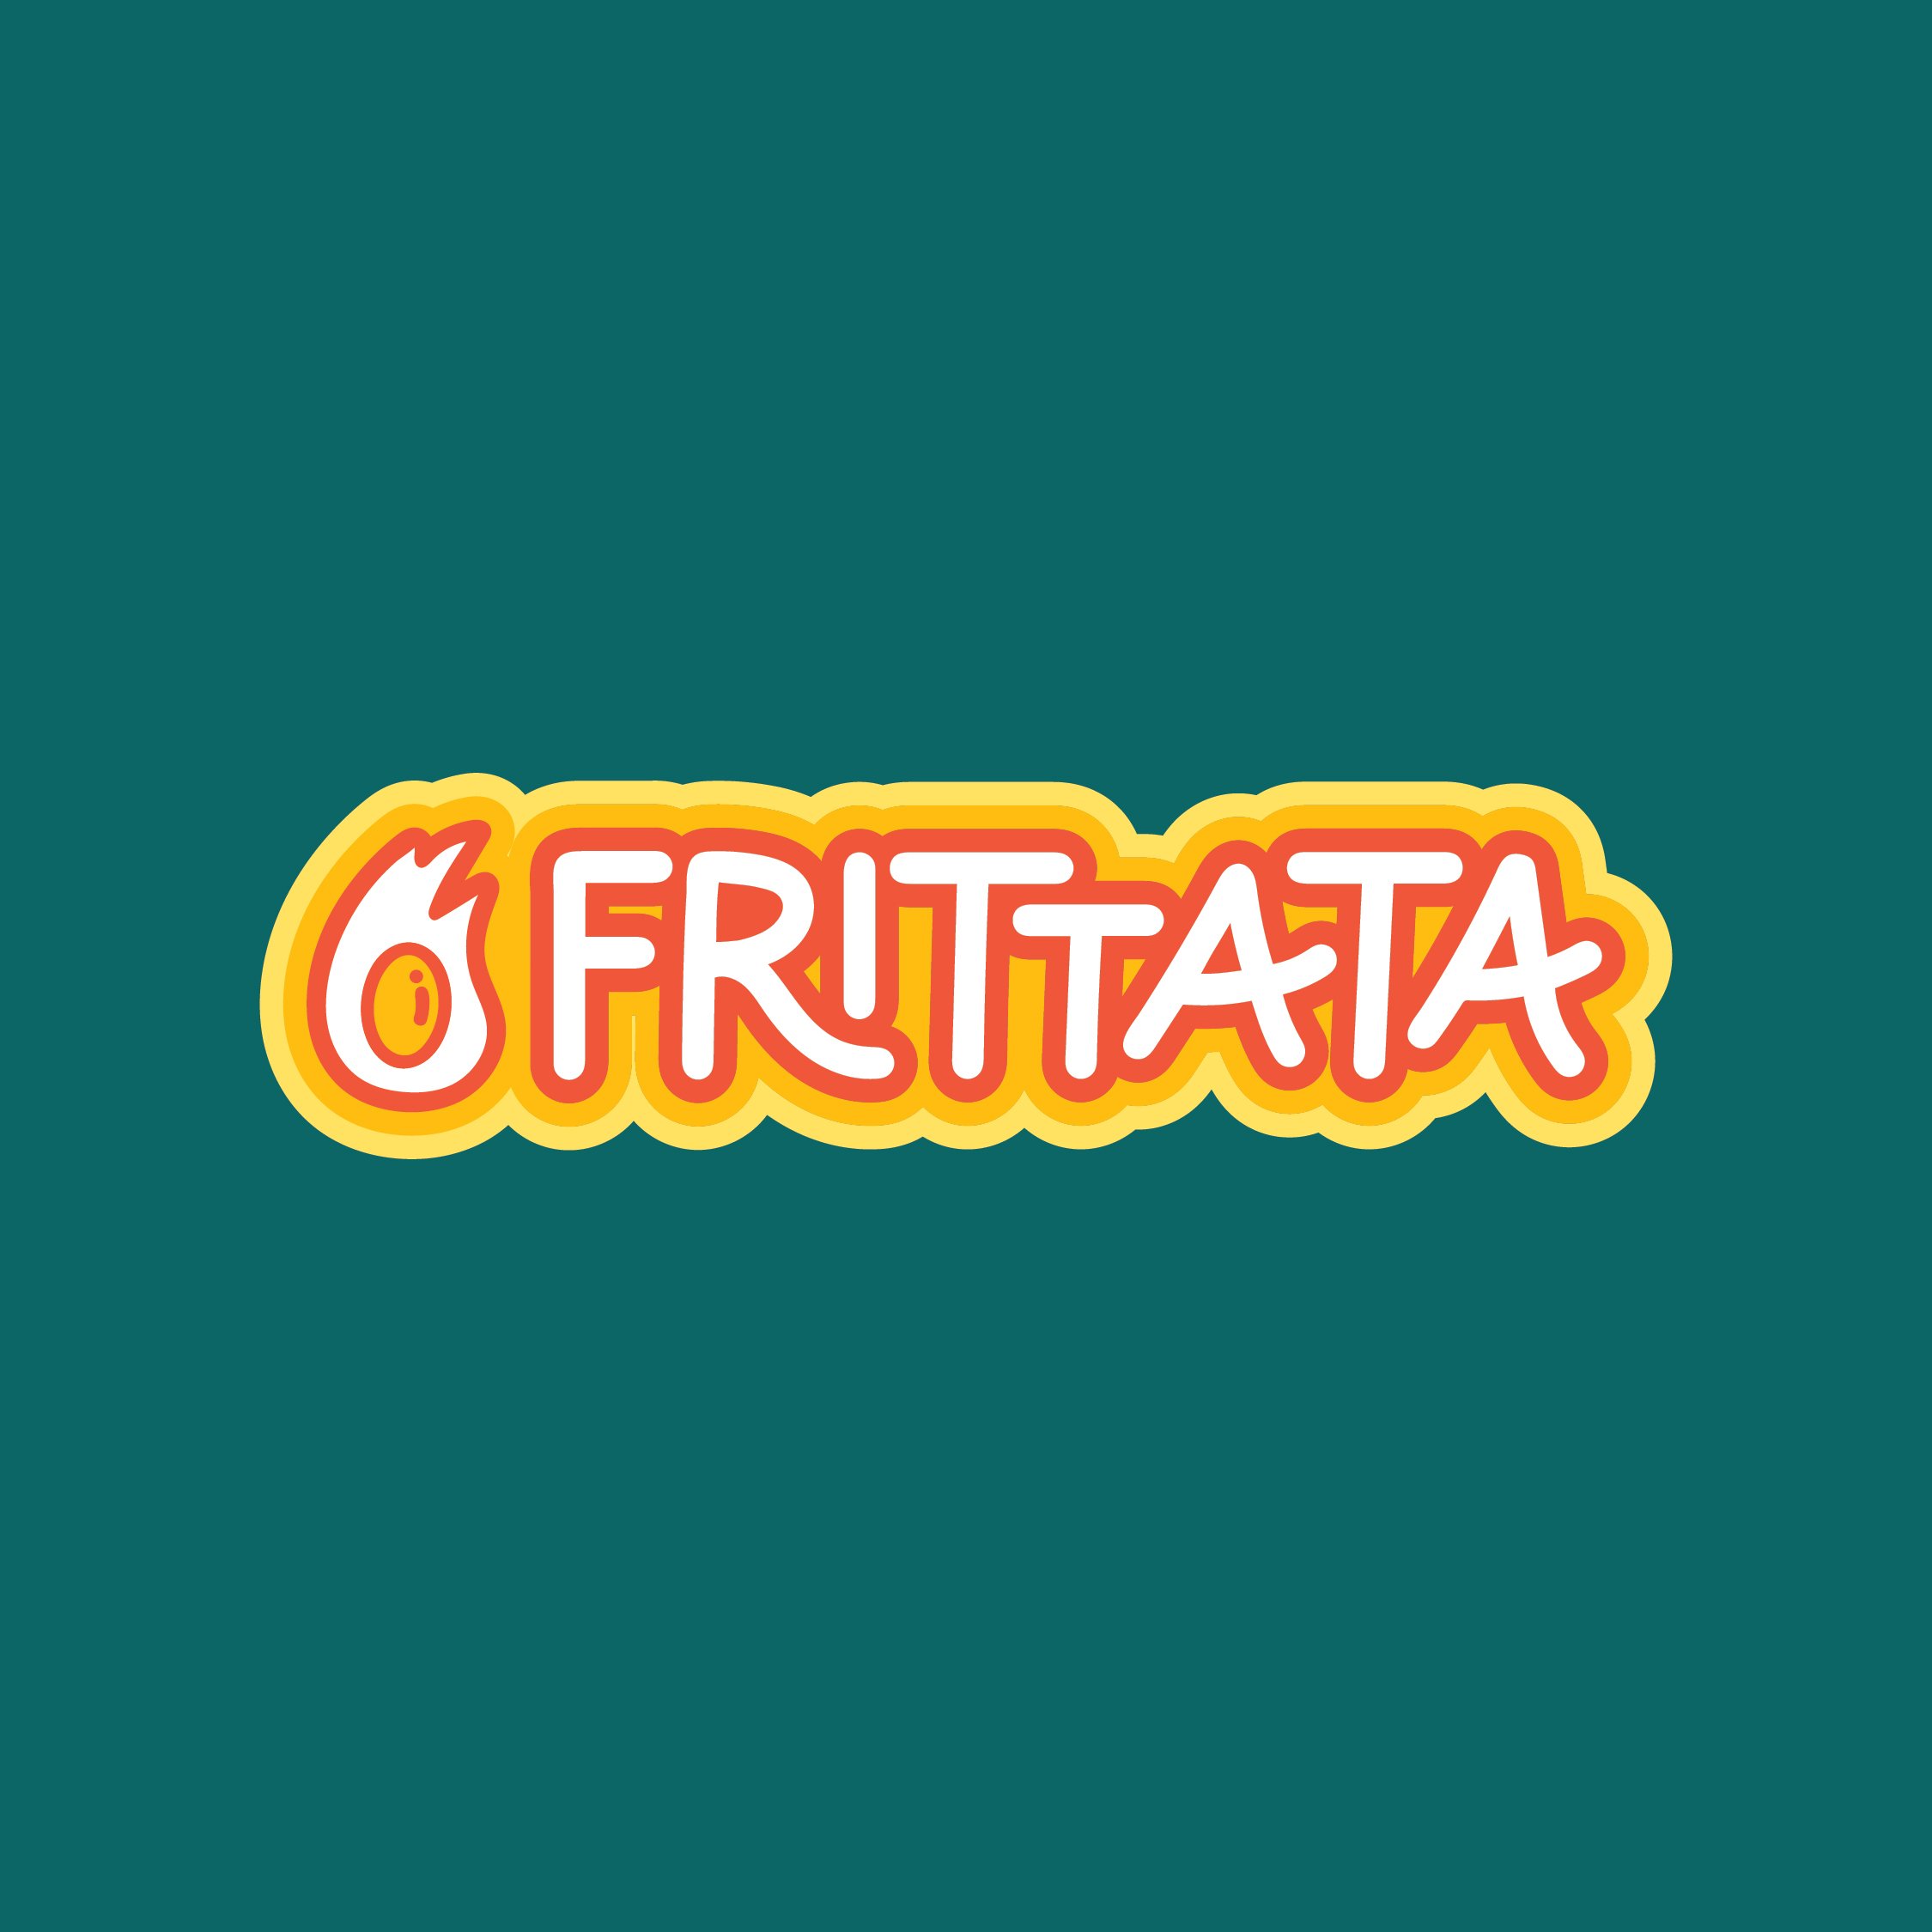 Frittata-SocialMedia-LetteringWorks-Logo.jpg